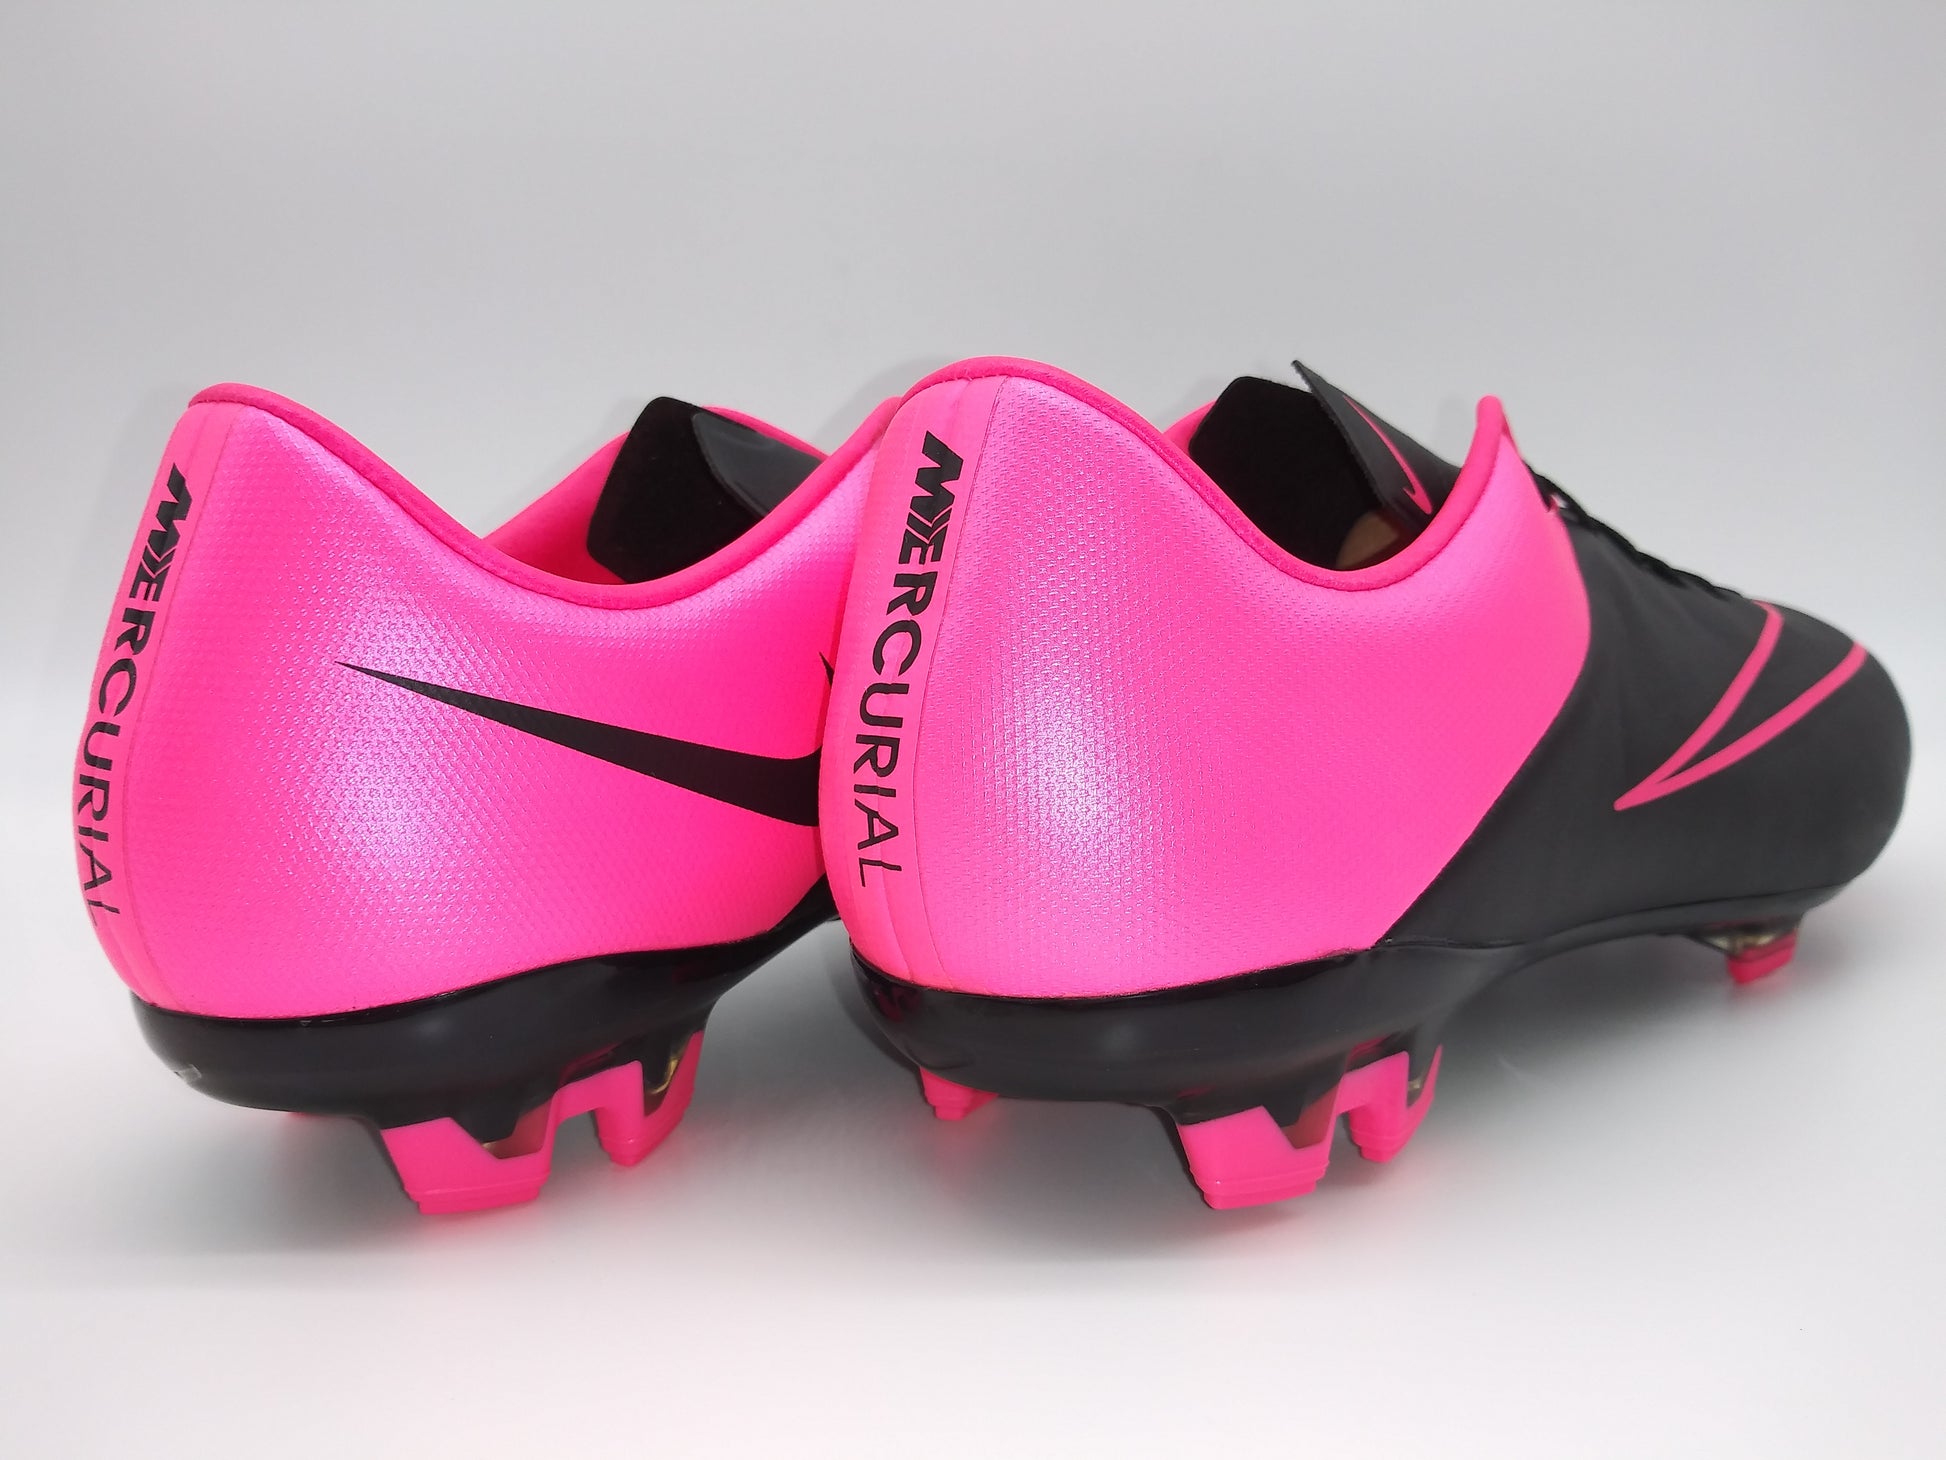 Diez Solenoide Fantasía Nike Mercurial Veloce II Leather FG Black Pink – Villegas Footwear